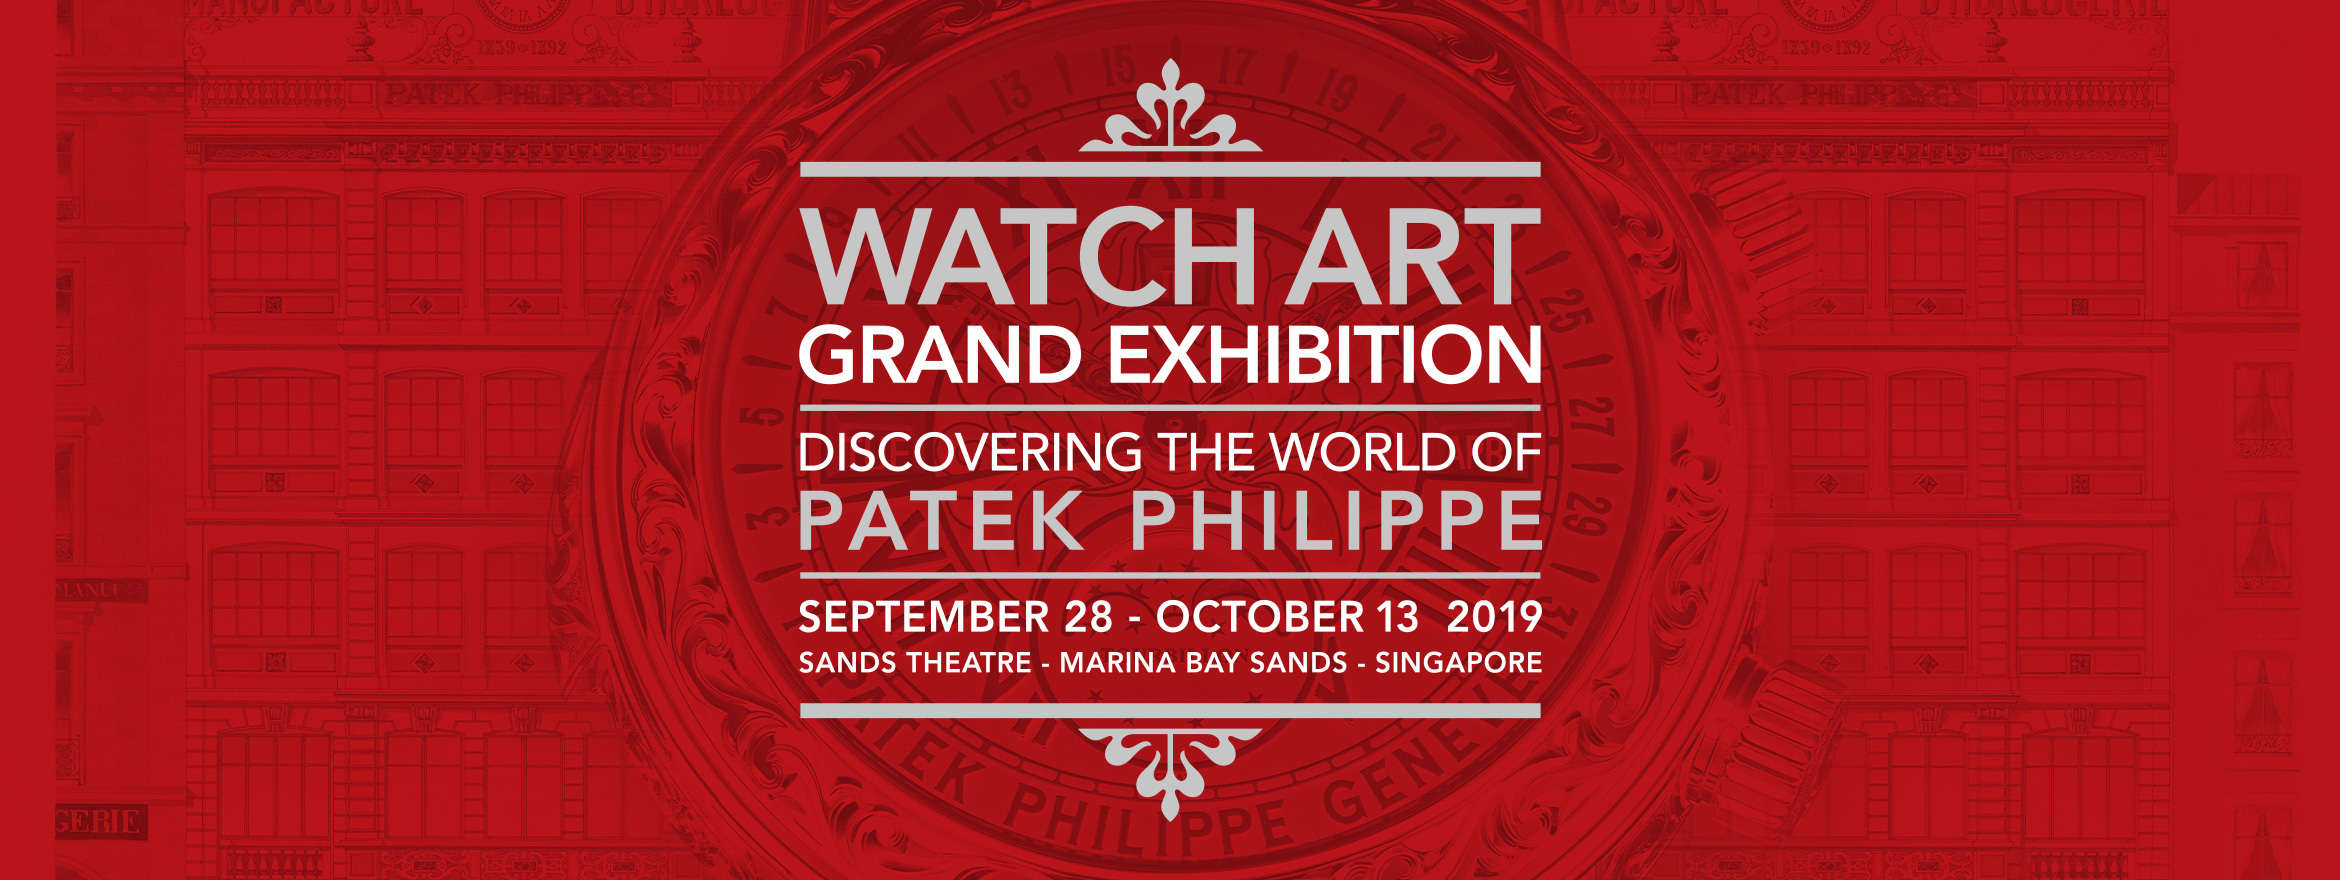 Patek Philippe Grand Exhibition in Singapore